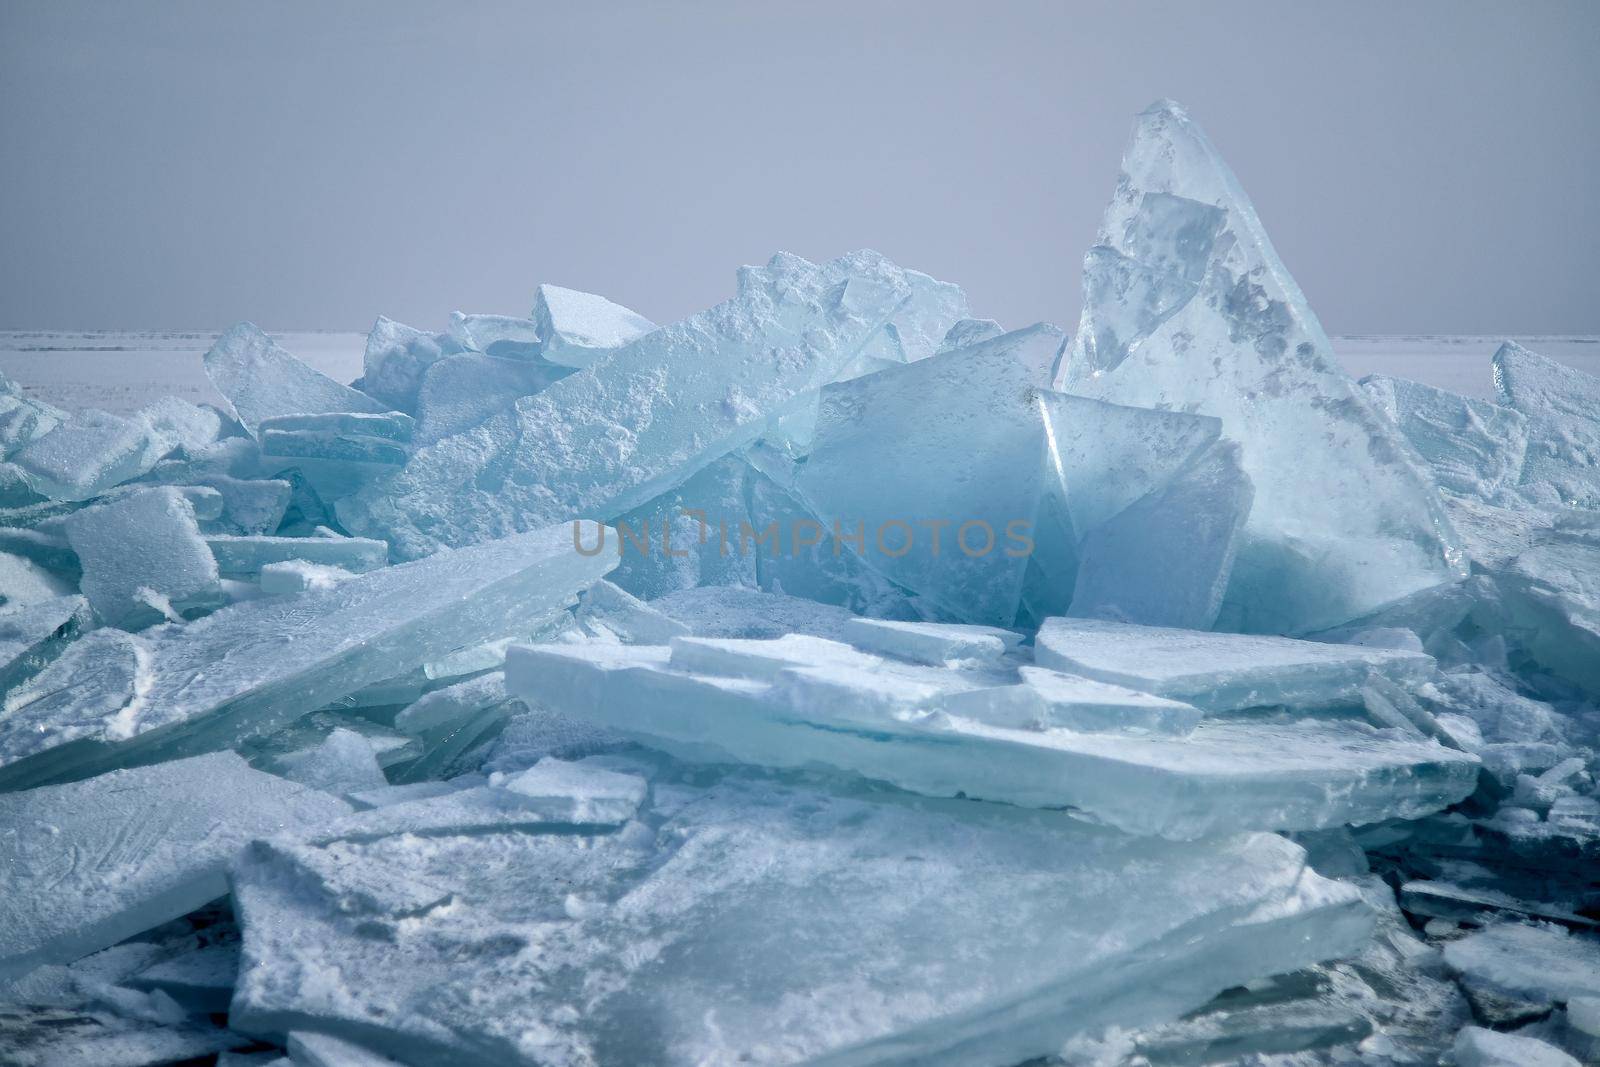 The ice at Lake Kapchagai by snep_photo